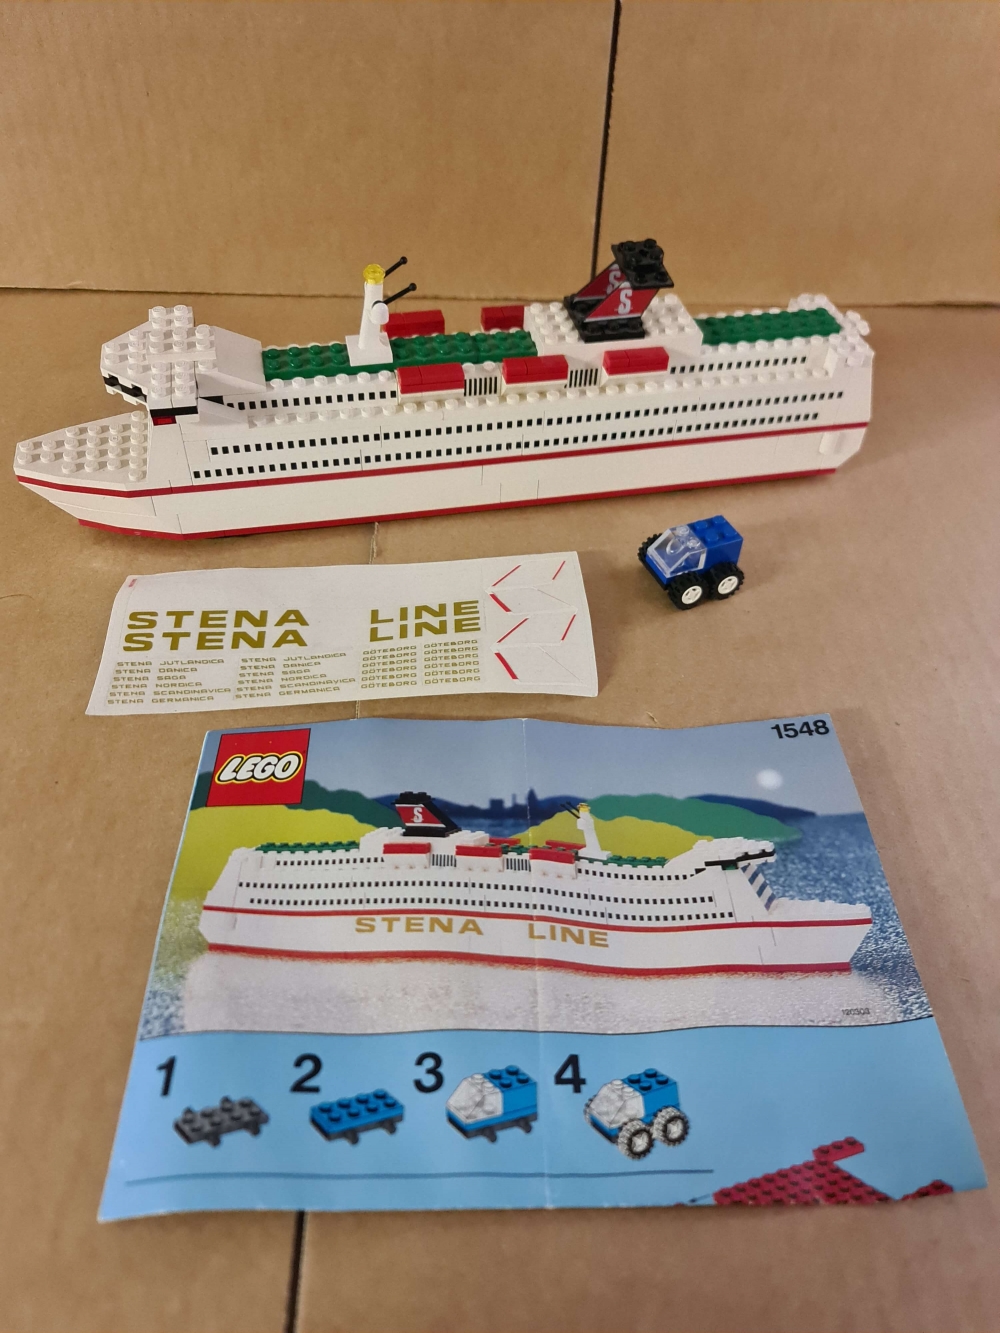 Sett 1548 fra Lego Universal Buildings Sets : Ferries serien.
Meget pent sett. 
Komplett med manual

